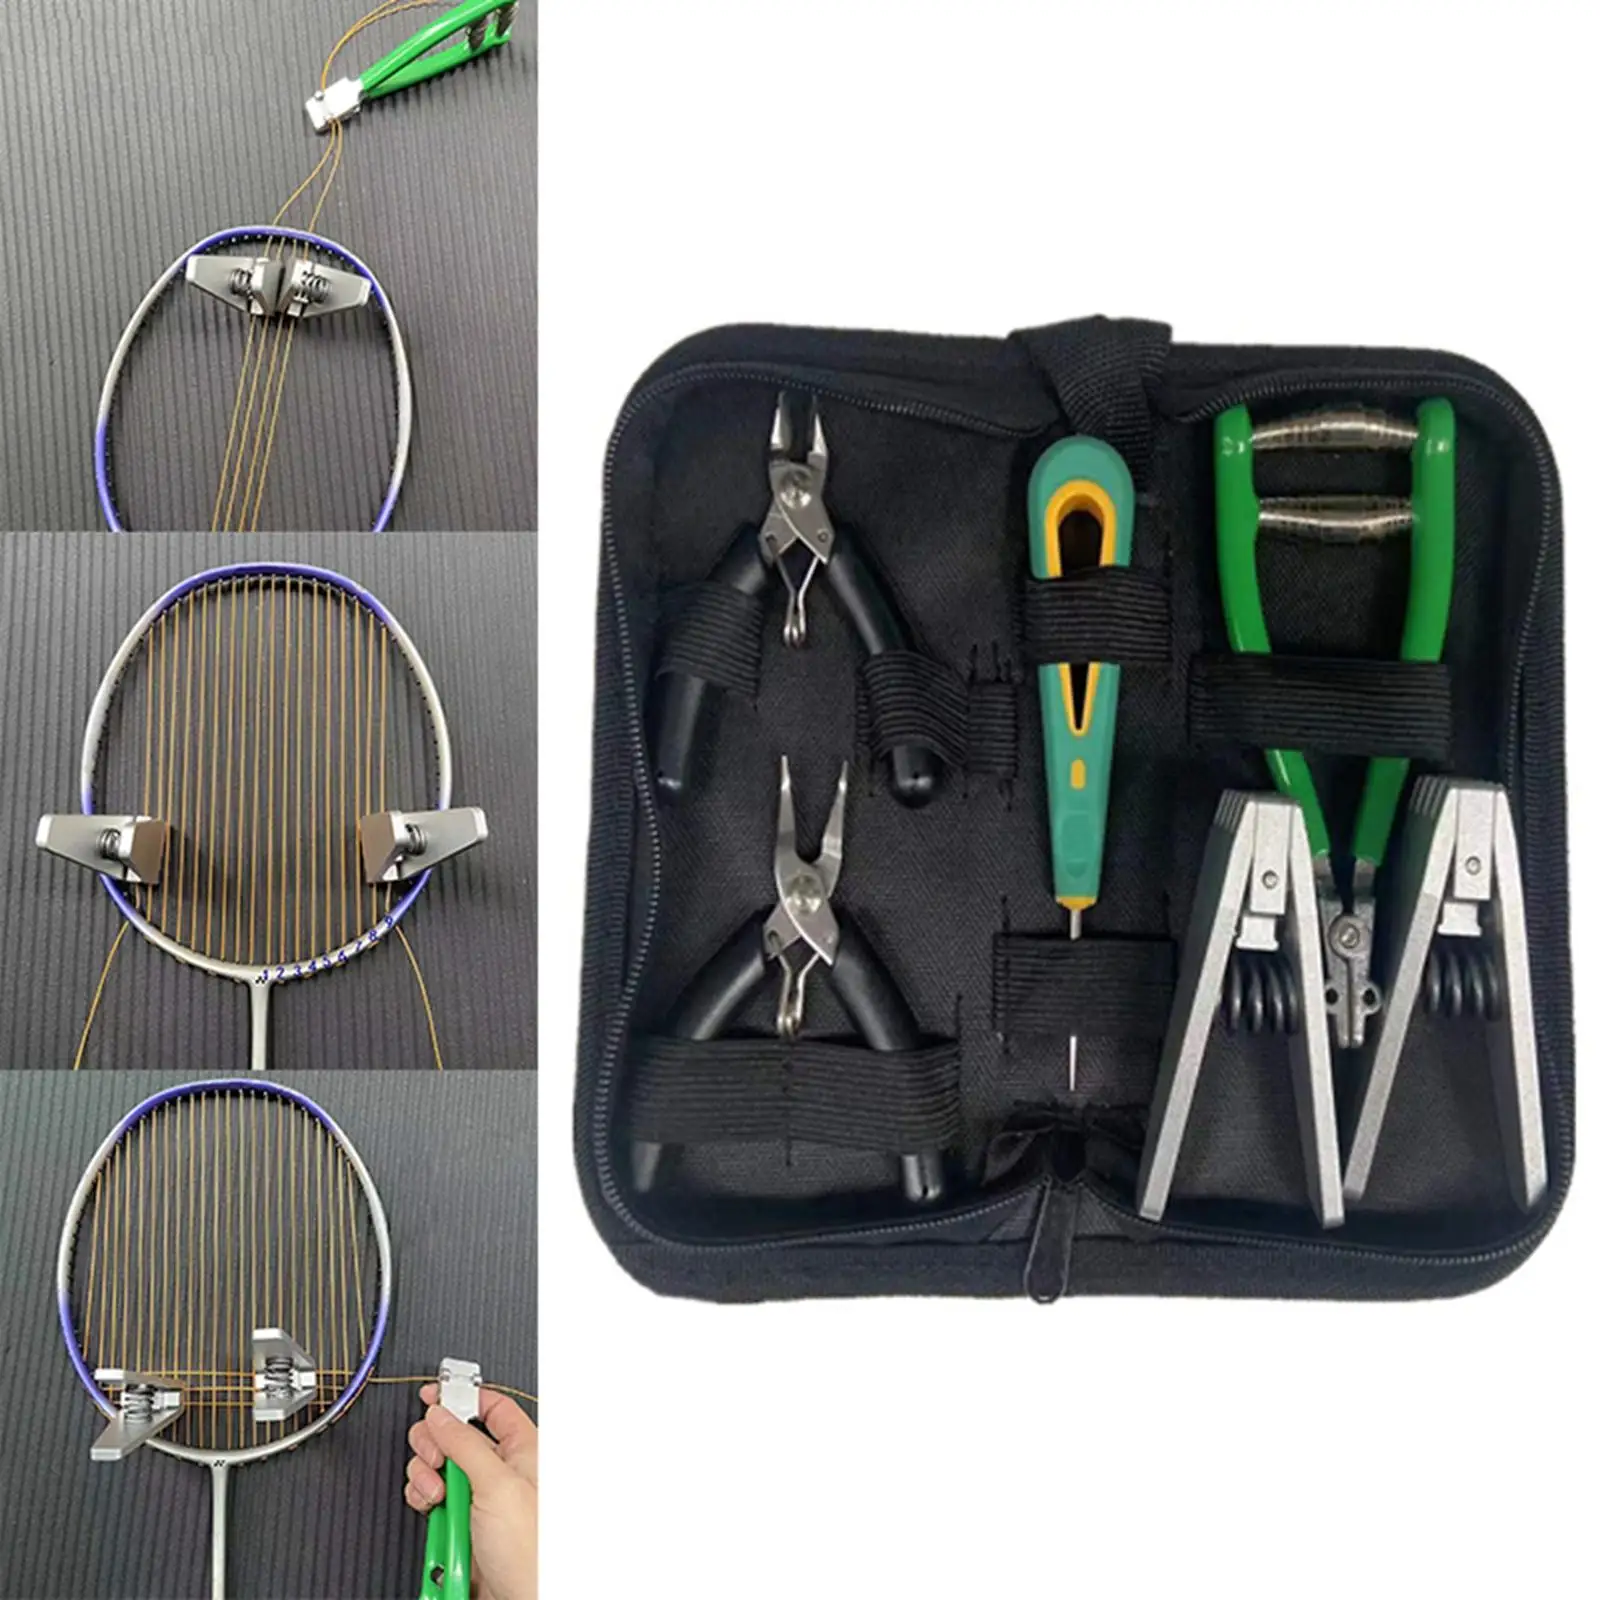 Starting Stringing Clamp Tool Badminton Squash Tennis Racket Storage Bag